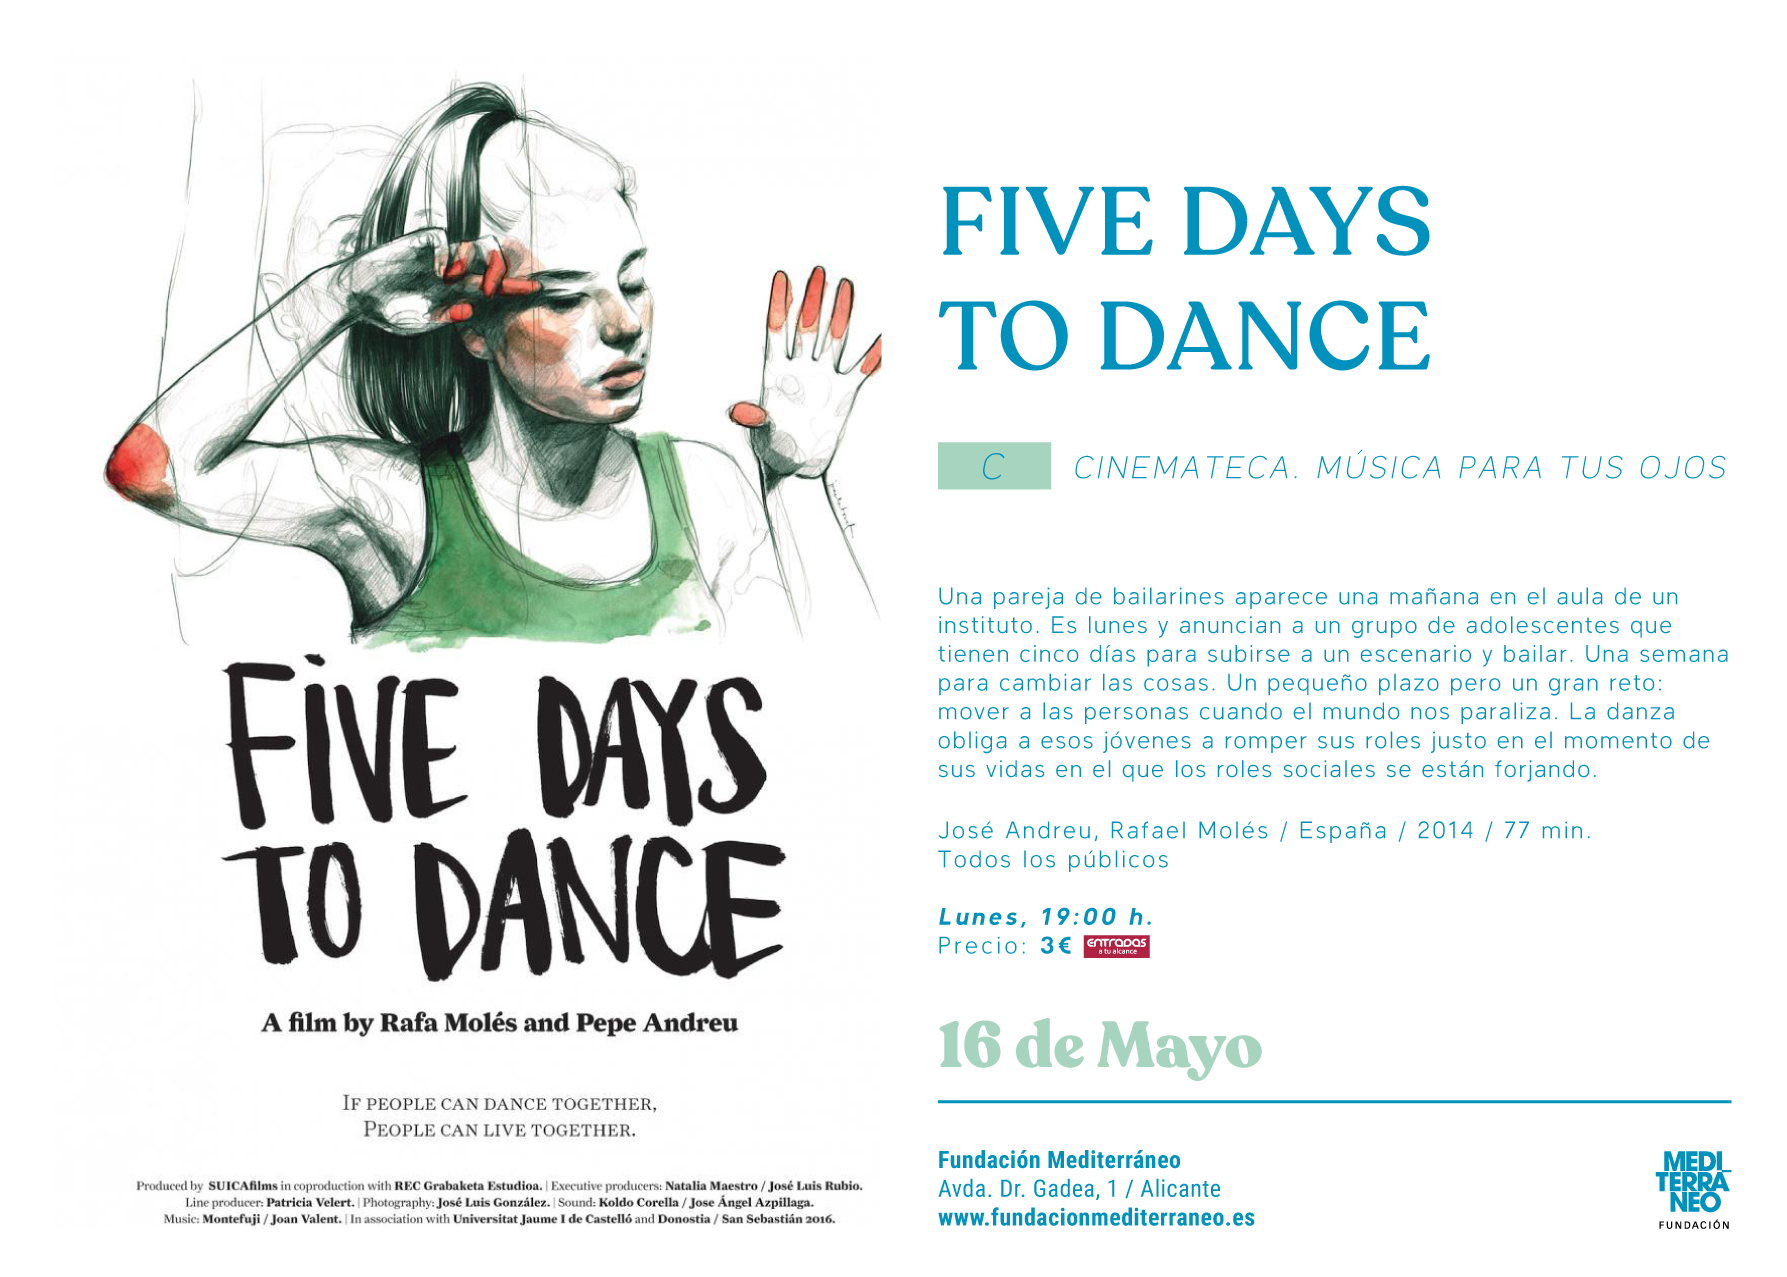 cinemateca-five-days-to-dance-de-jose-andreu-y-rafael-moles-61fa4cbab76d47.92960843.png